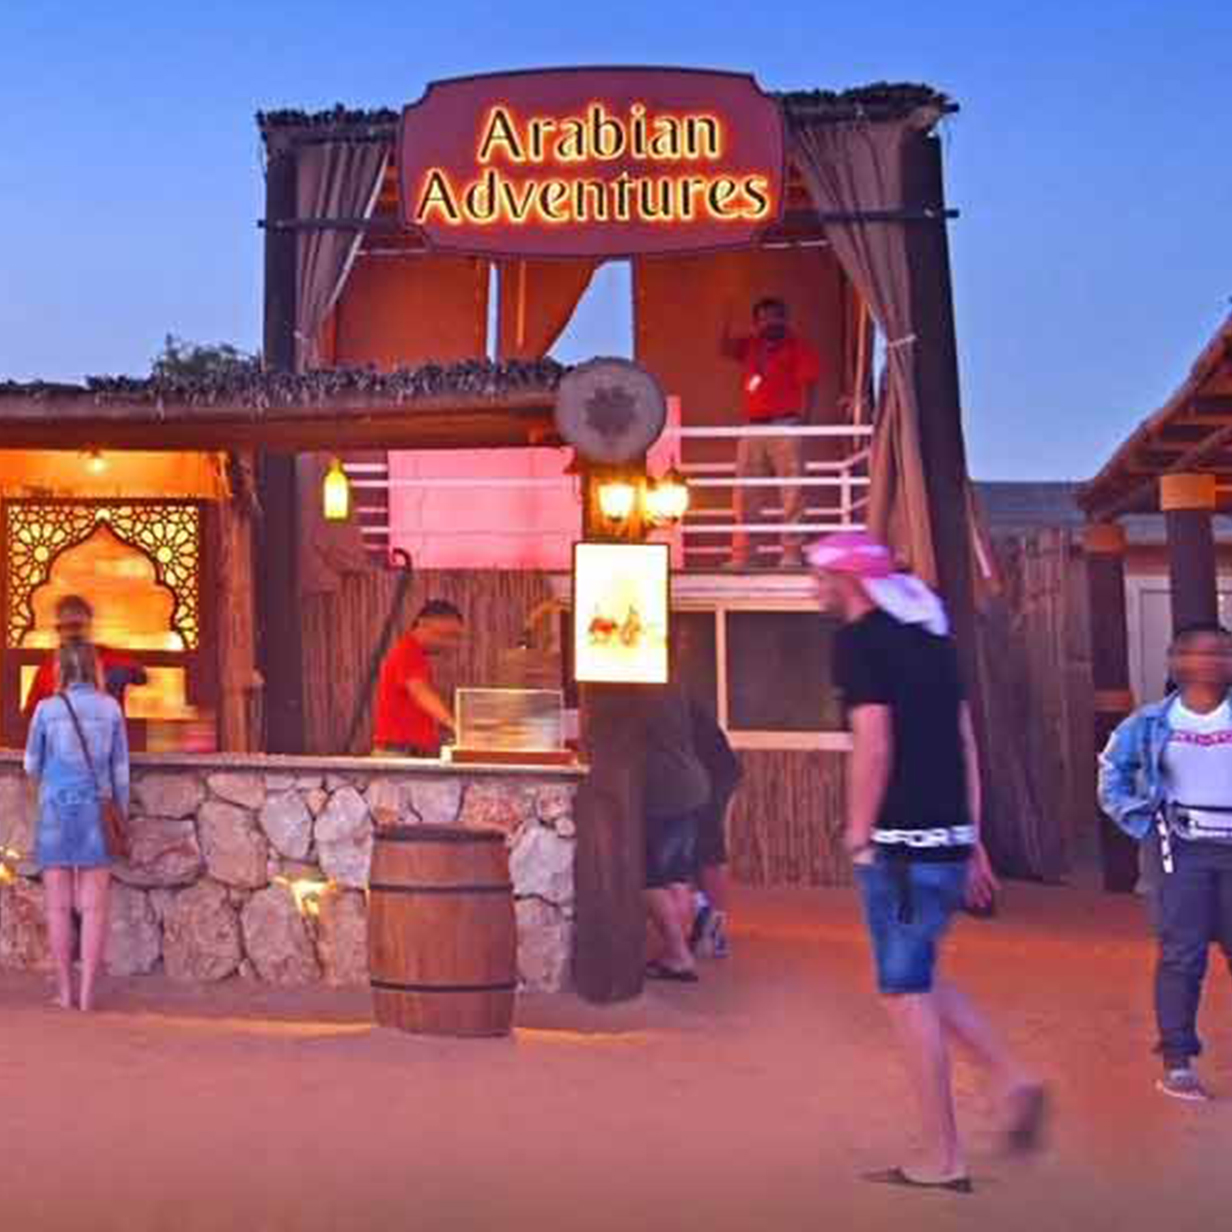 Evening Desert Safari in Dubai - Shared Vehicle, , large